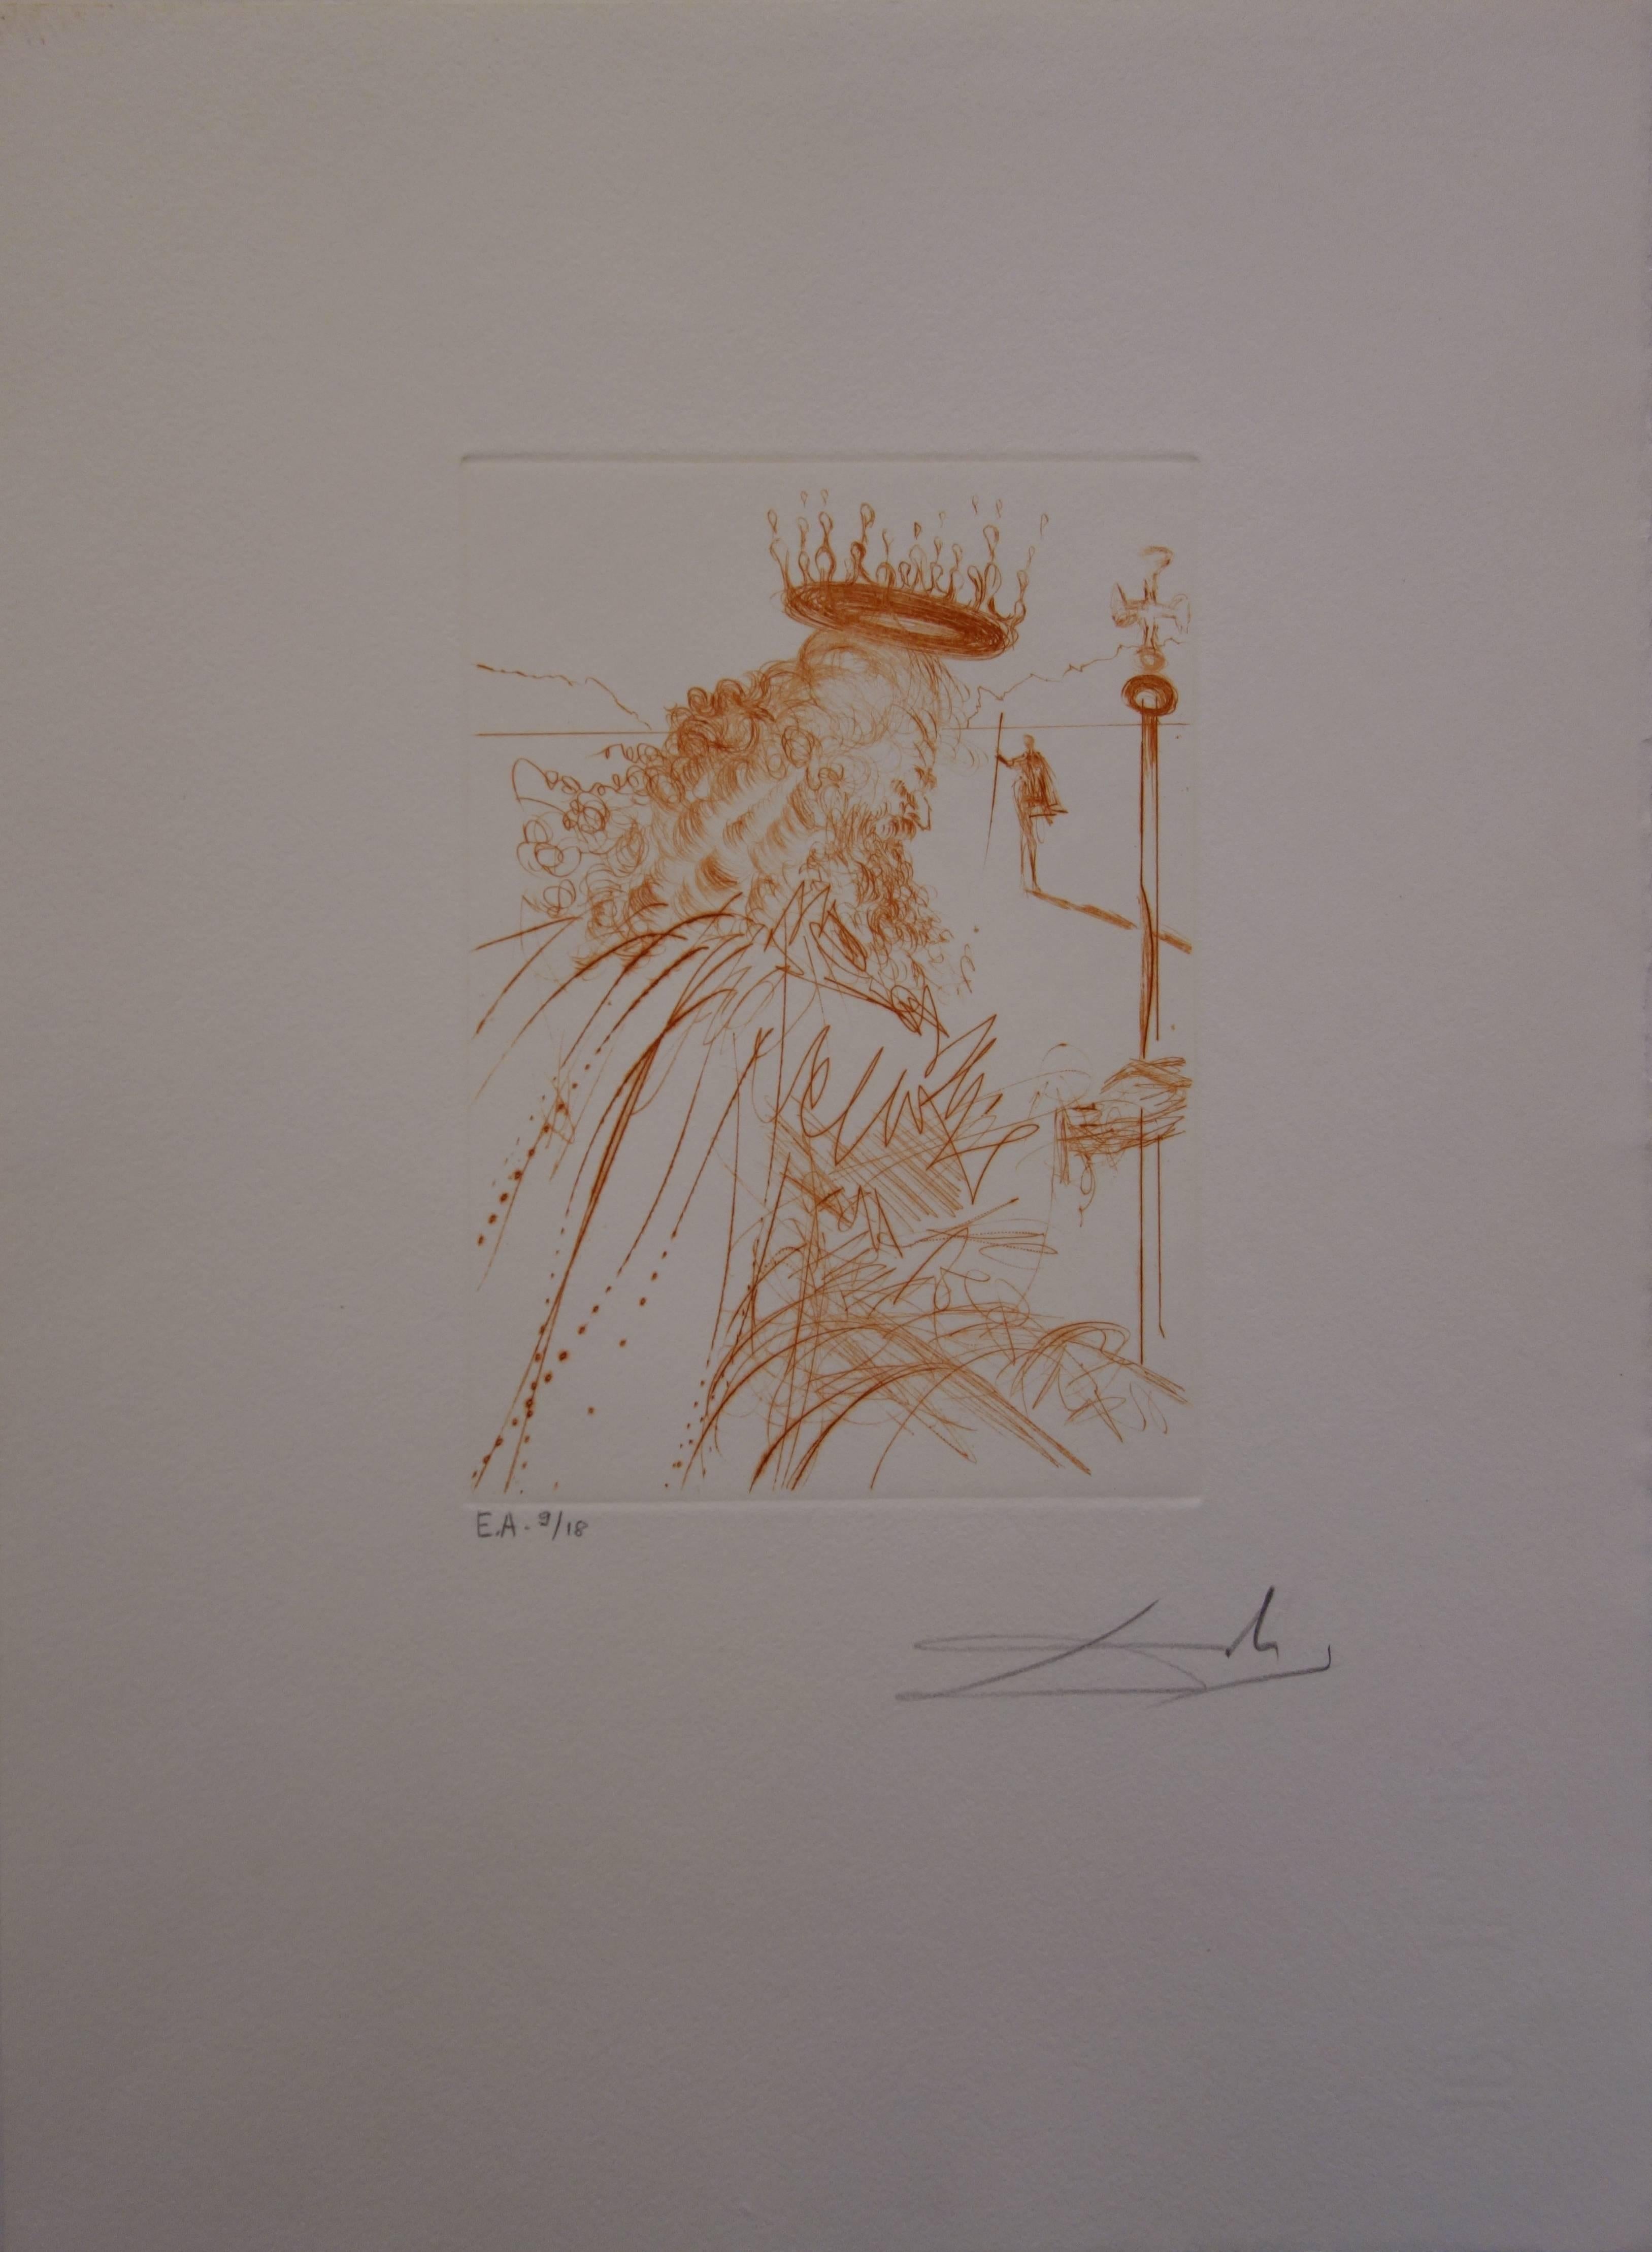 Much Ado über Shakespeare: „Kinglear“ – Original signierte Radierung (Surrealismus), Print, von Salvador Dalí